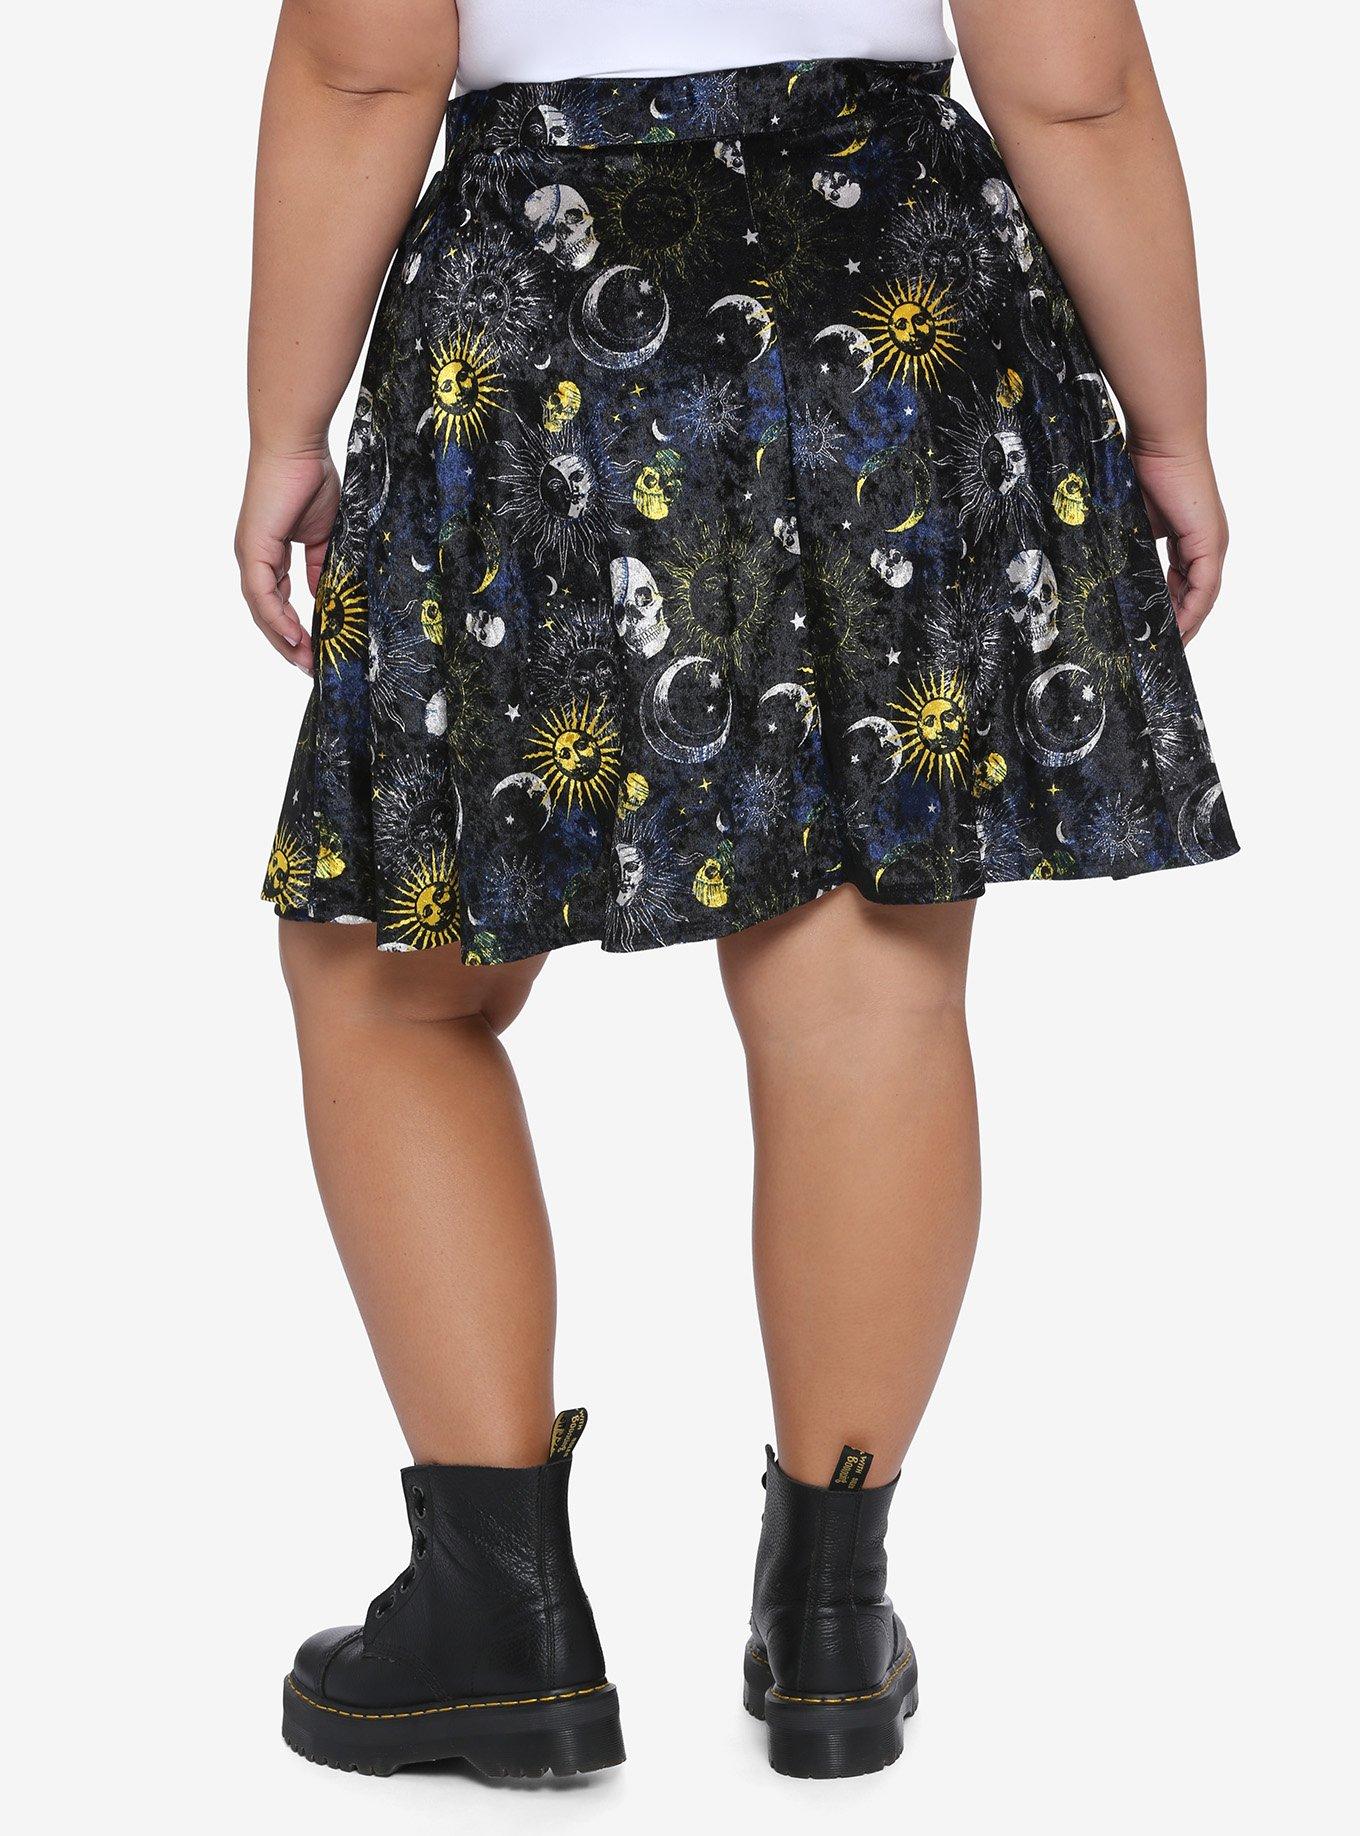 Celestial Skulls Velvet Skater Skirt Plus Size, PURPLE, alternate